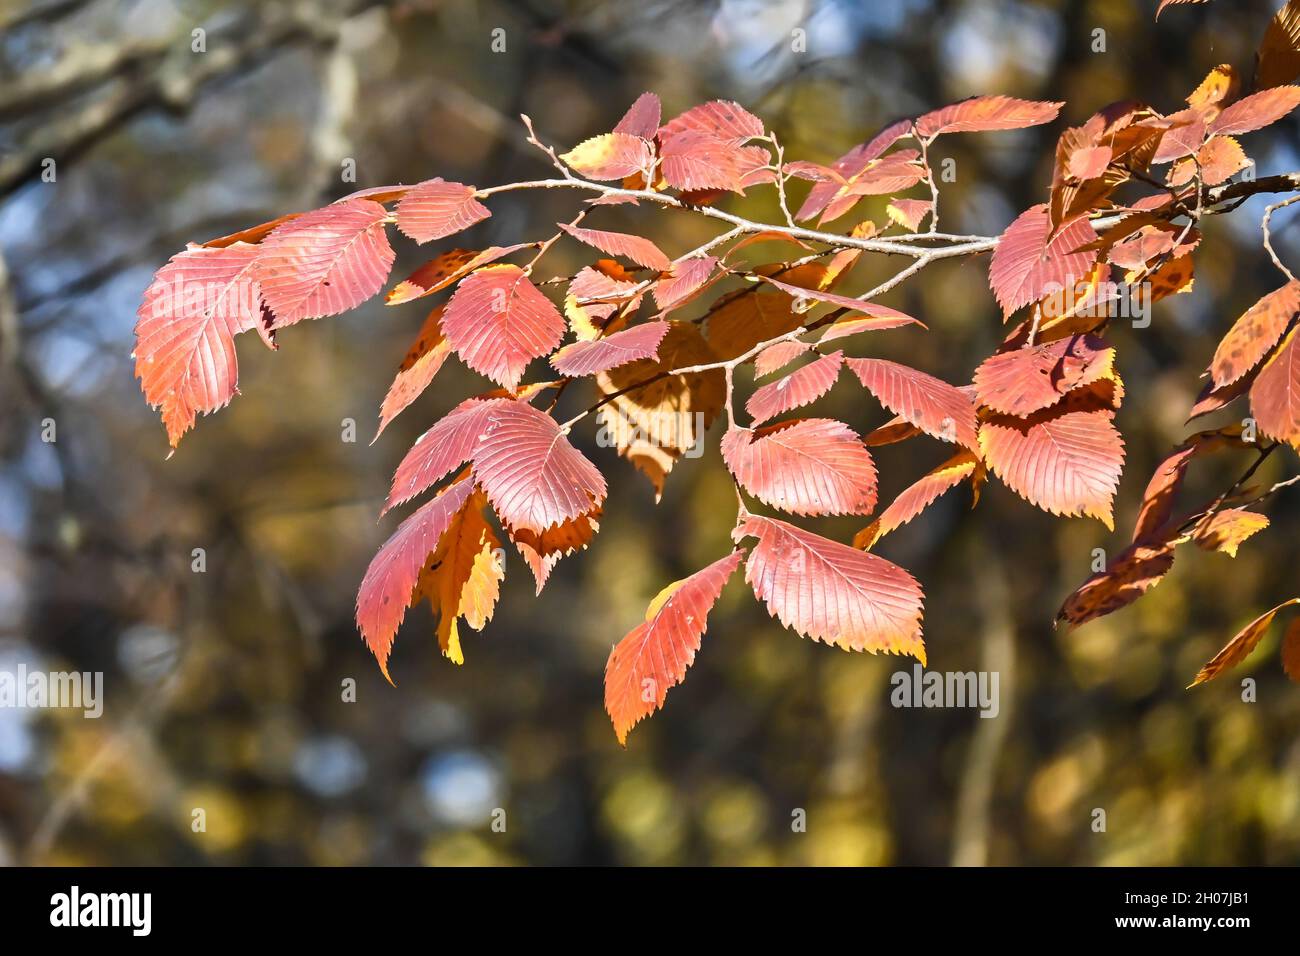 Colori autunnali. Foglie di faggio dai colori vivaci in ottobre. Foto Stock